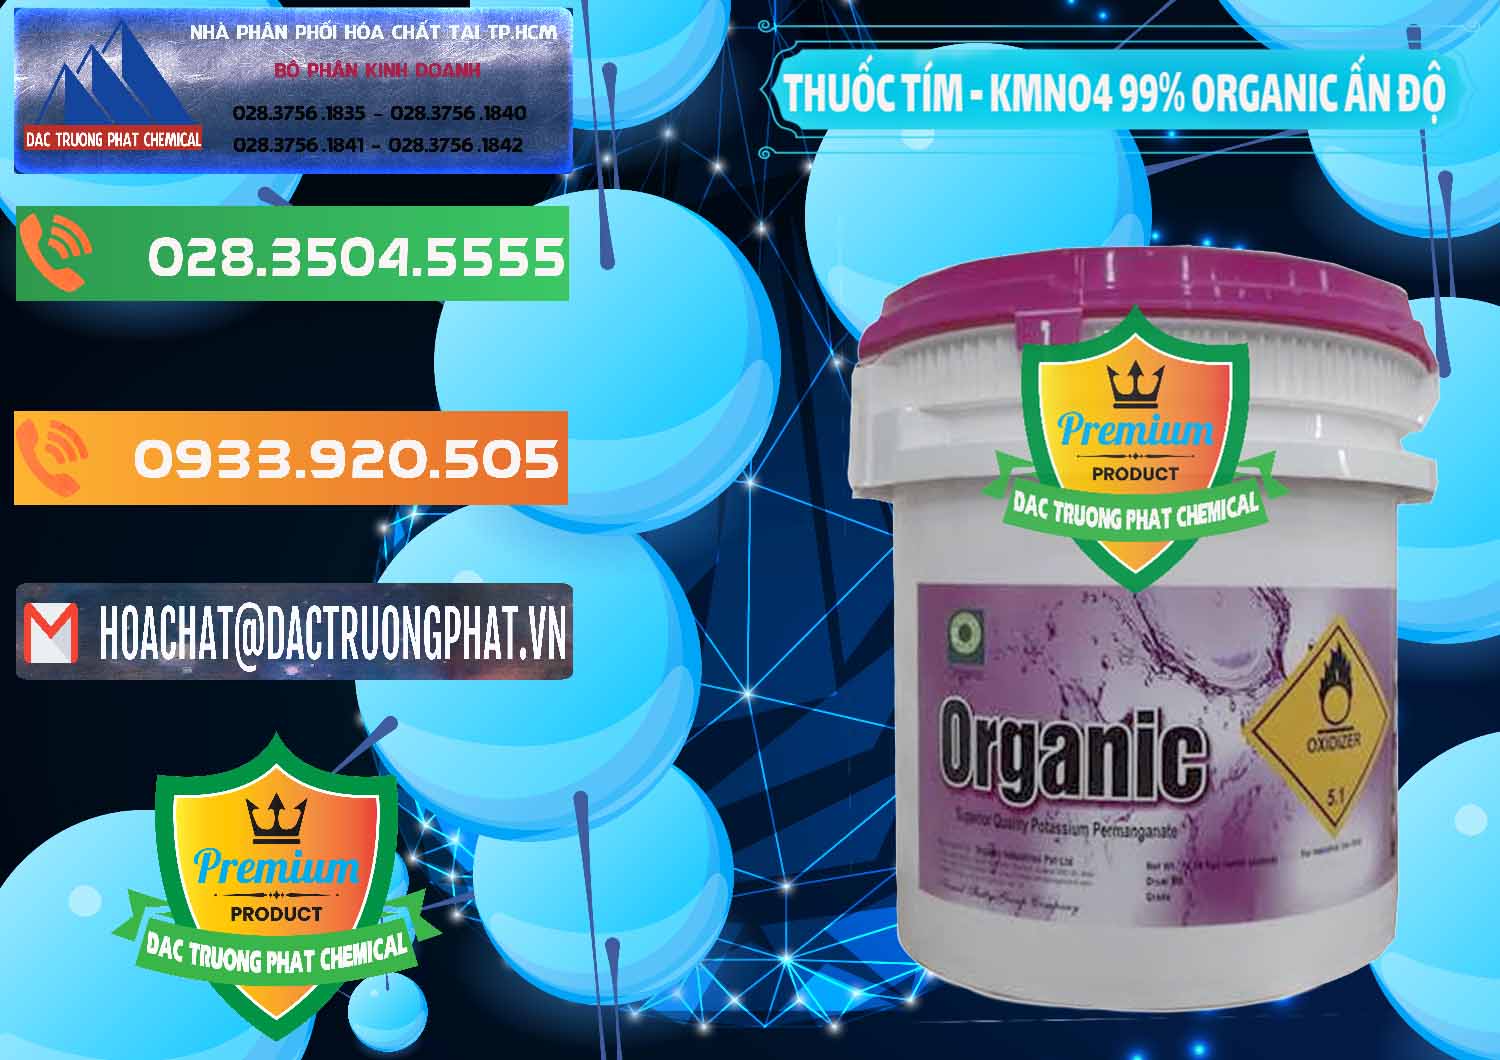 Nơi bán _ cung ứng Thuốc Tím - KMNO4 99% Organic Ấn Độ India - 0216 - Chuyên phân phối - nhập khẩu hóa chất tại TP.HCM - hoachatxulynuoc.com.vn